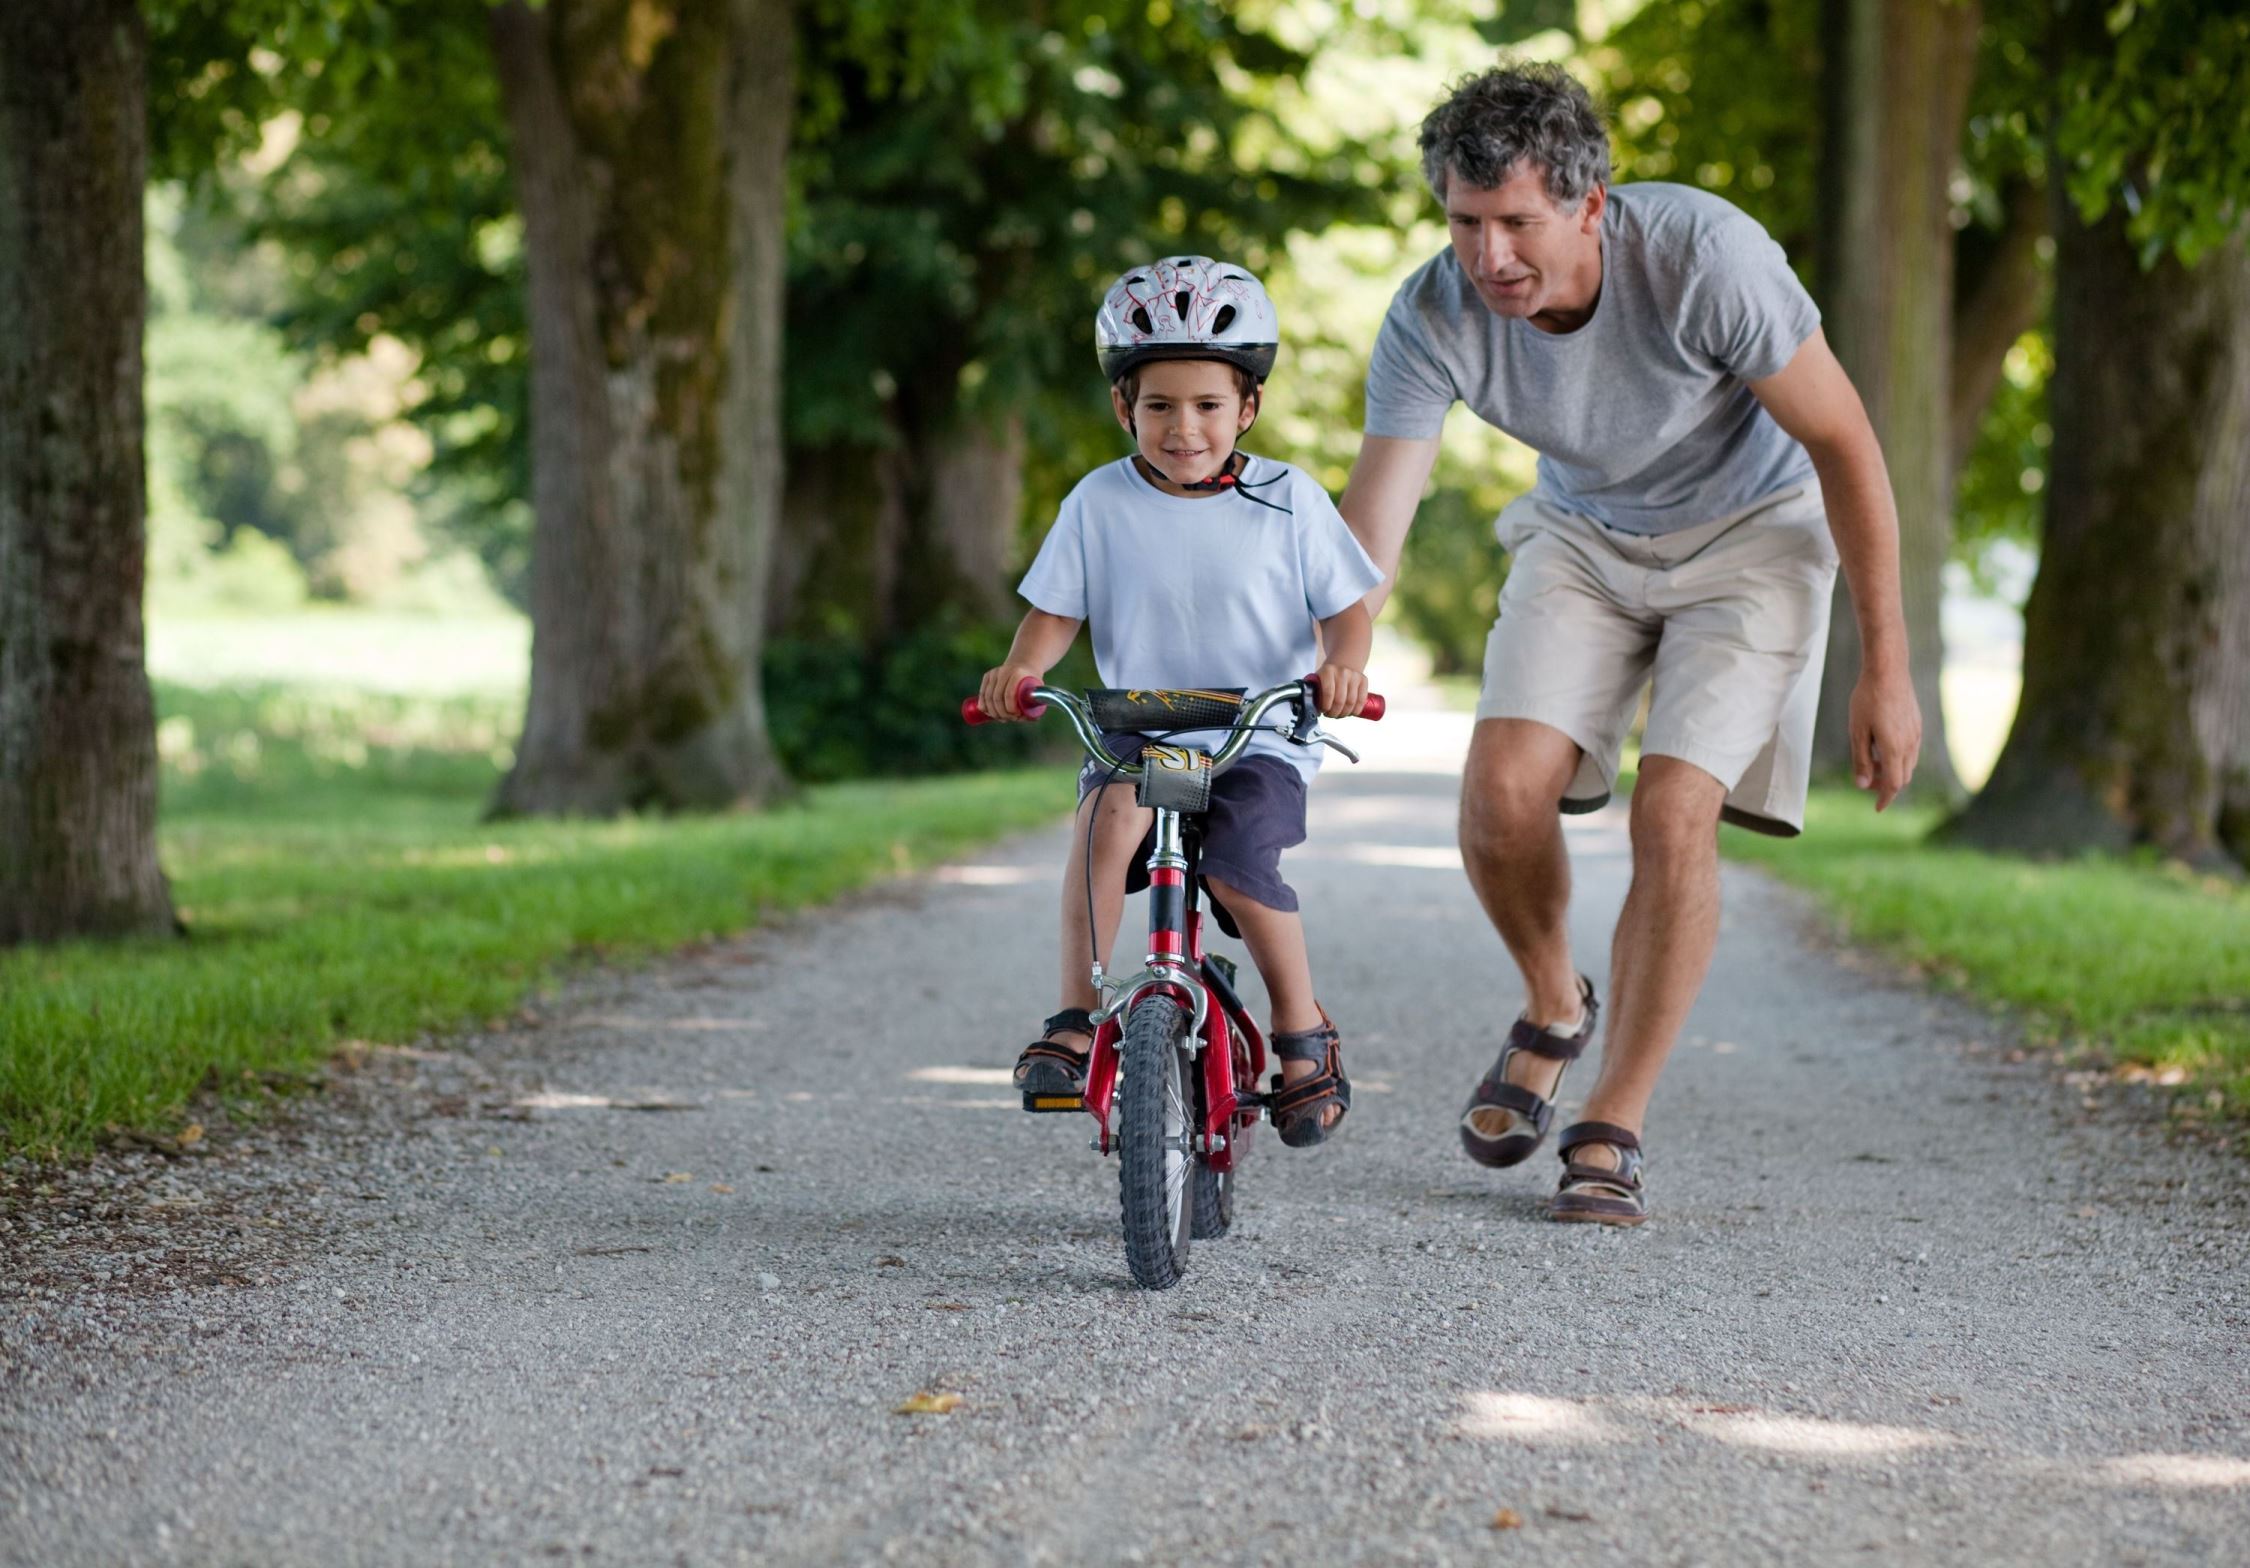 Vader leert kind fietsen bij casebschrijving risicogestuurd wegbeheer gemeente Dordrecht